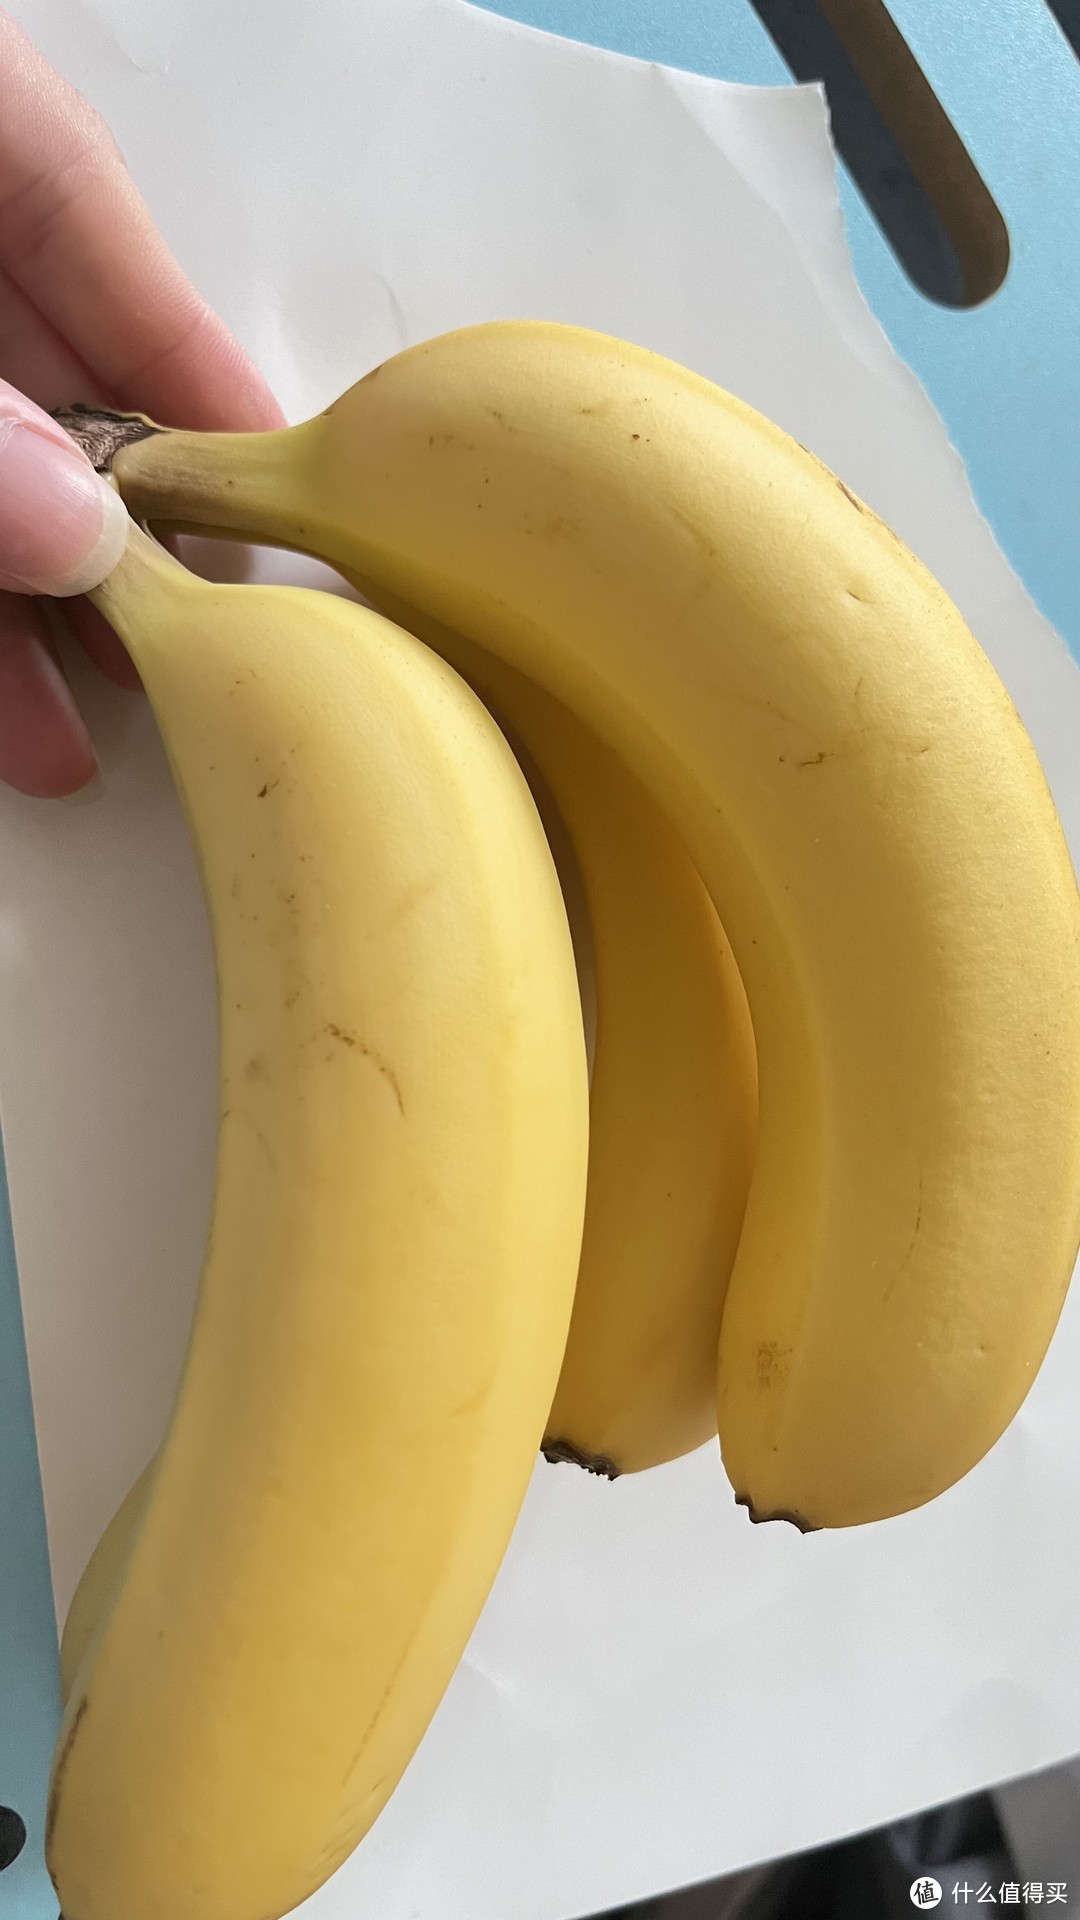 没想到在淘宝上买的香蕉还挺好吃的。